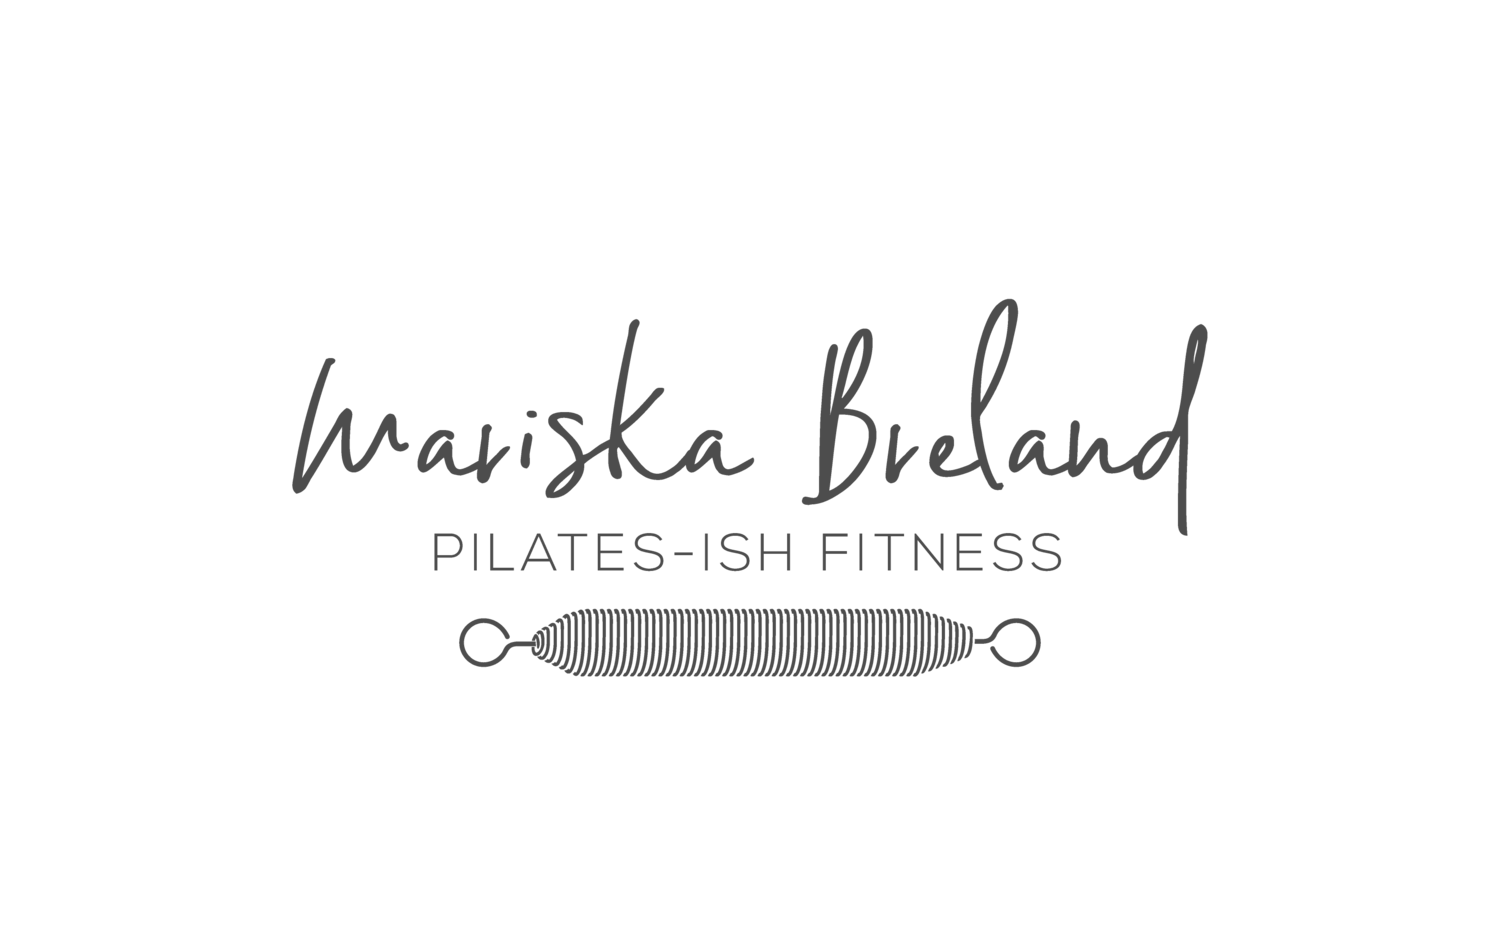 Pilates-ish Fitness with Mariska Breland